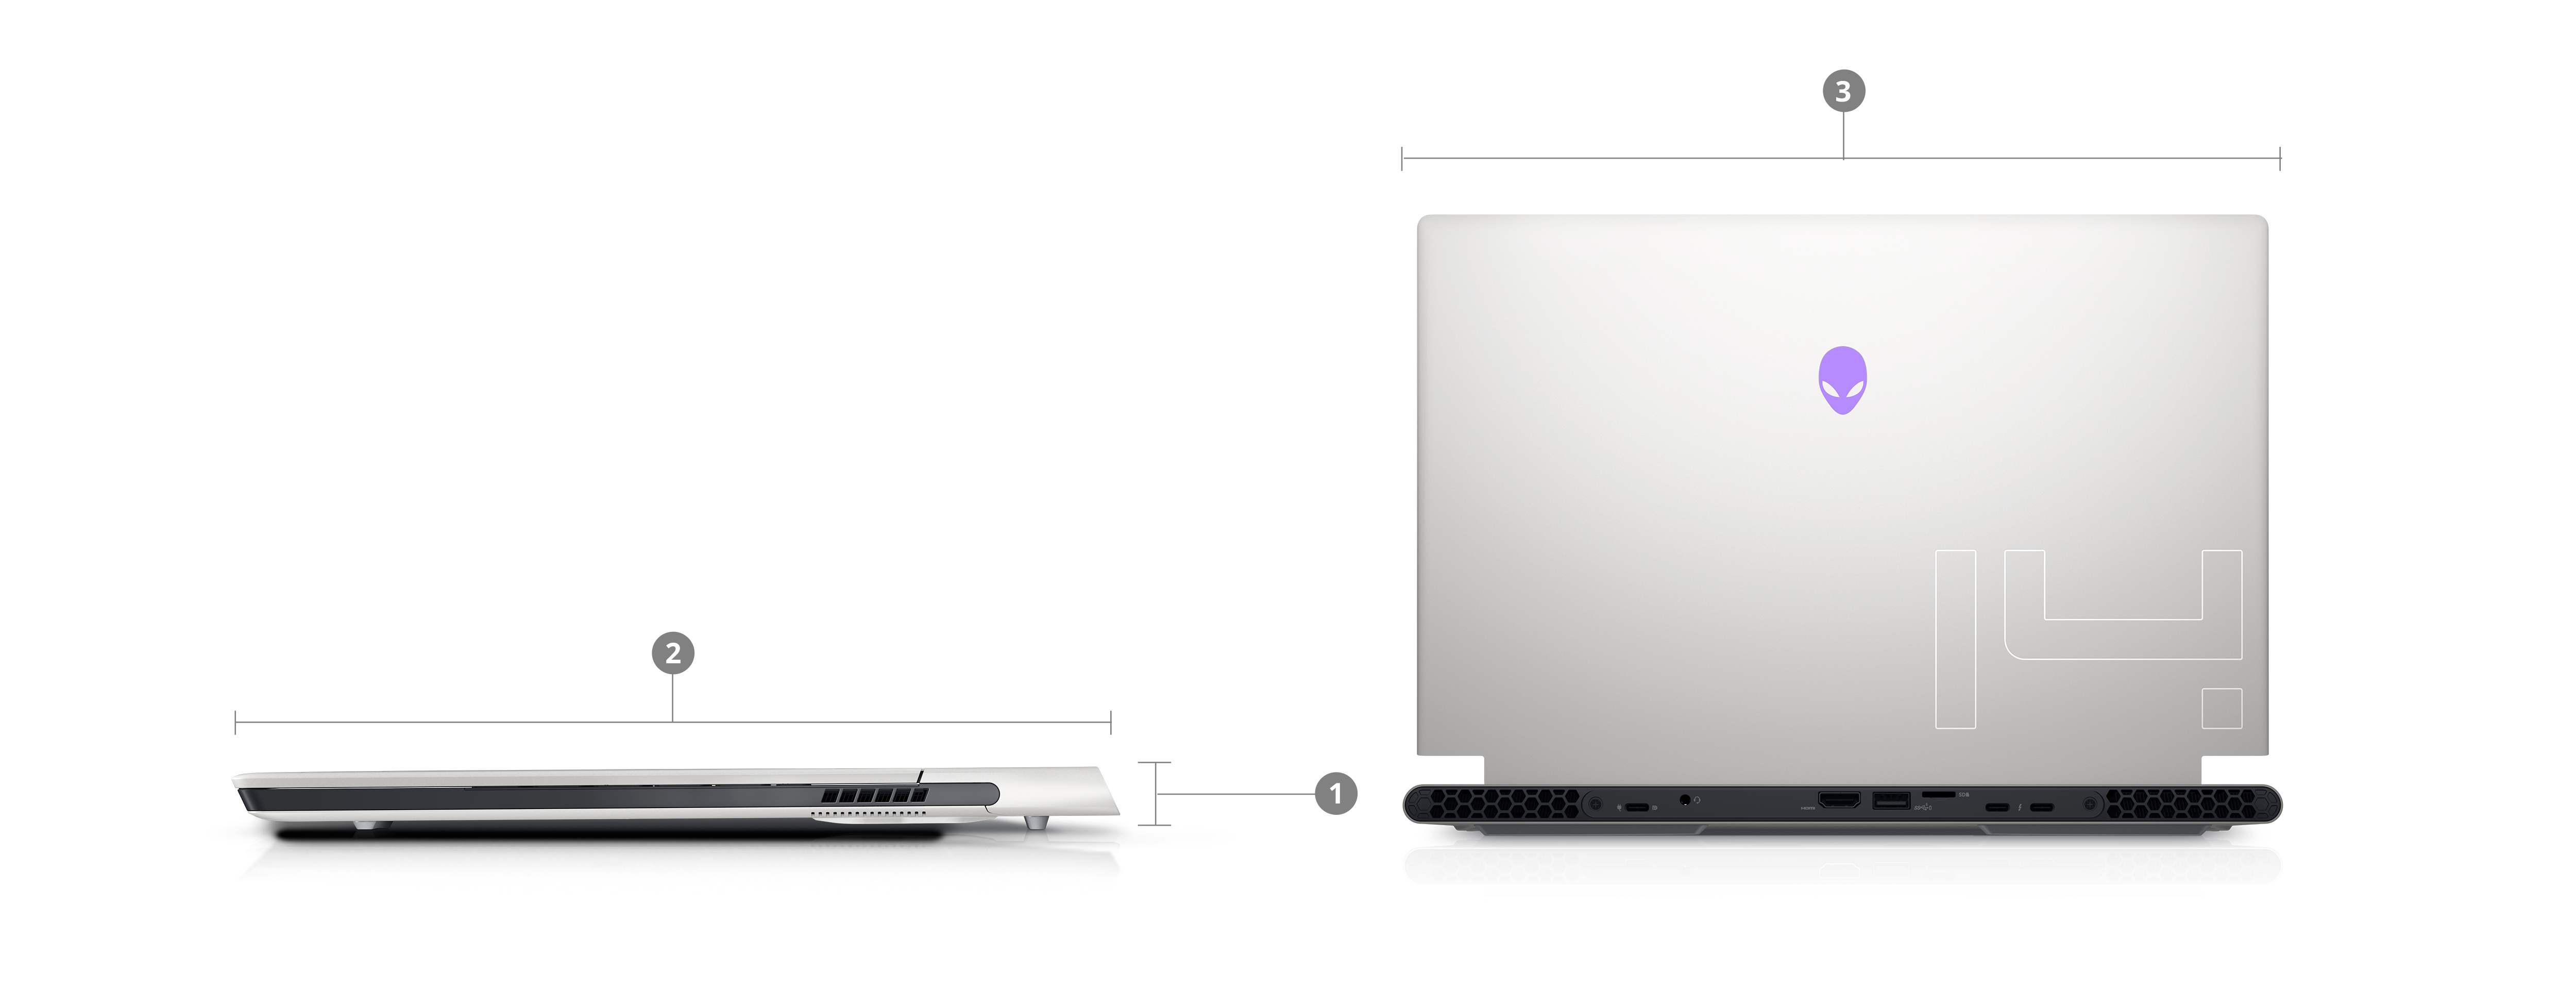 Bild zweier Dell Alienware X14 Gaminglaptops mit Zahlen von 1 bis 3 zur Kennzeichnung der Produktabmessungen und des Gewichts.